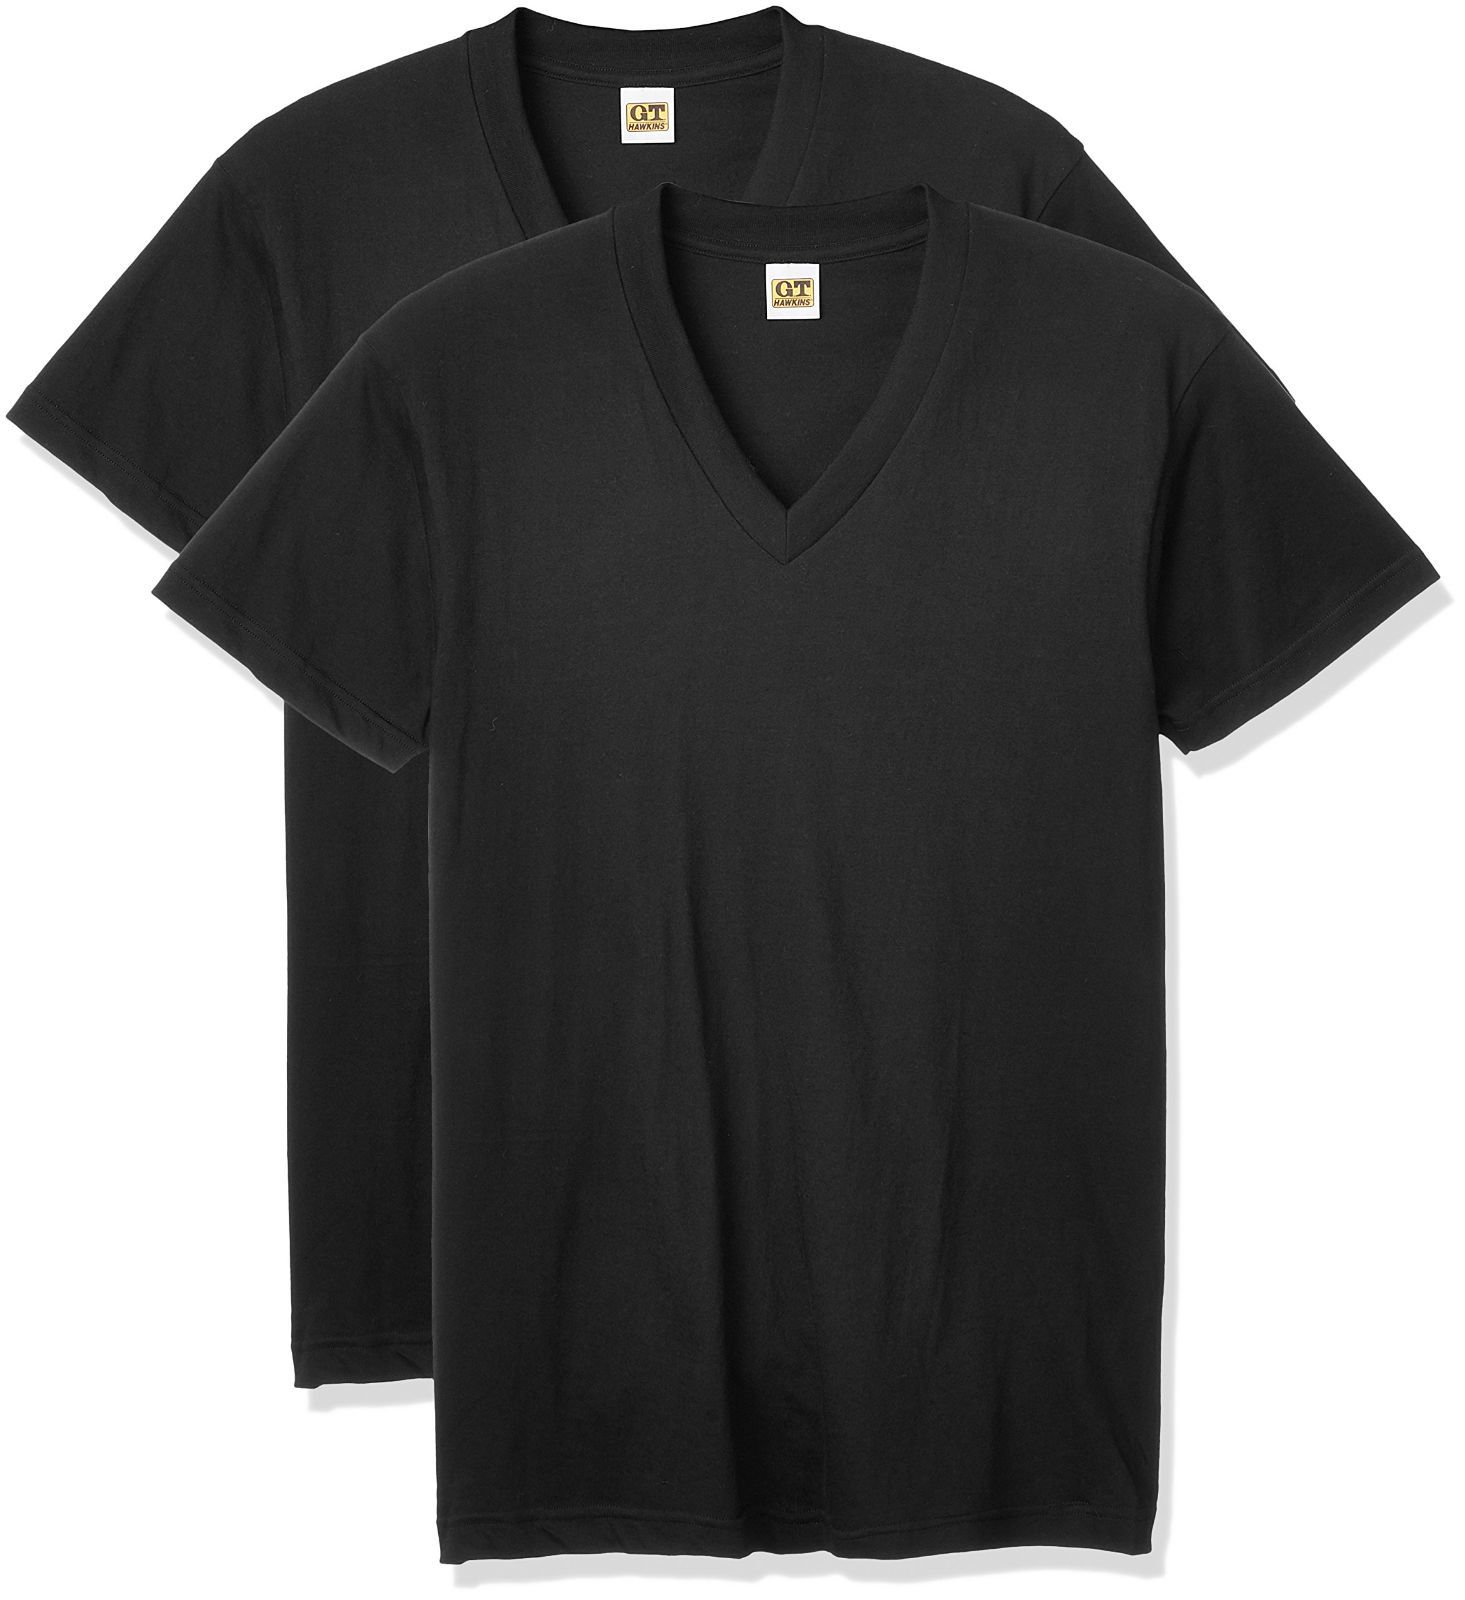 グンゼ インナーシャツ BASICPACKT-SHIRT 綿100% VネックTシャツ 2枚組 HK10152 メンズ  メルカリShops